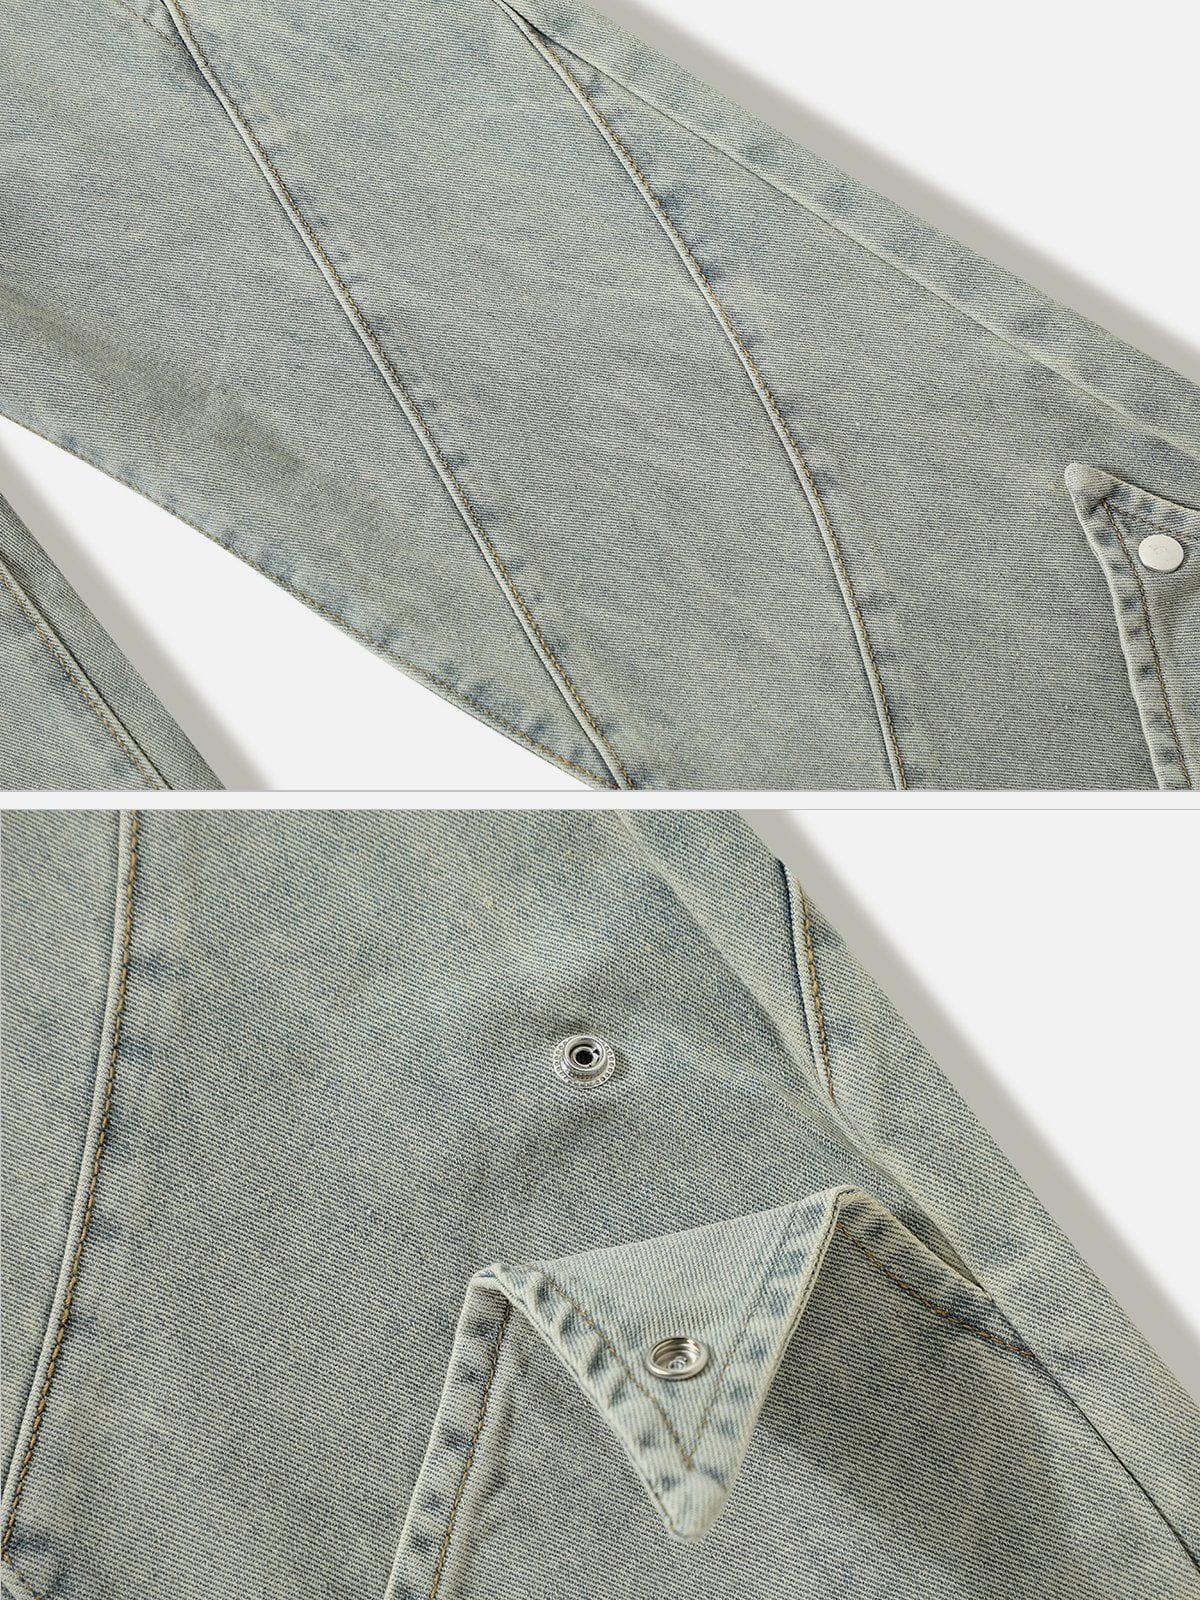 Faire Echo Button Triangle Patchwork Jeans Faire Echo